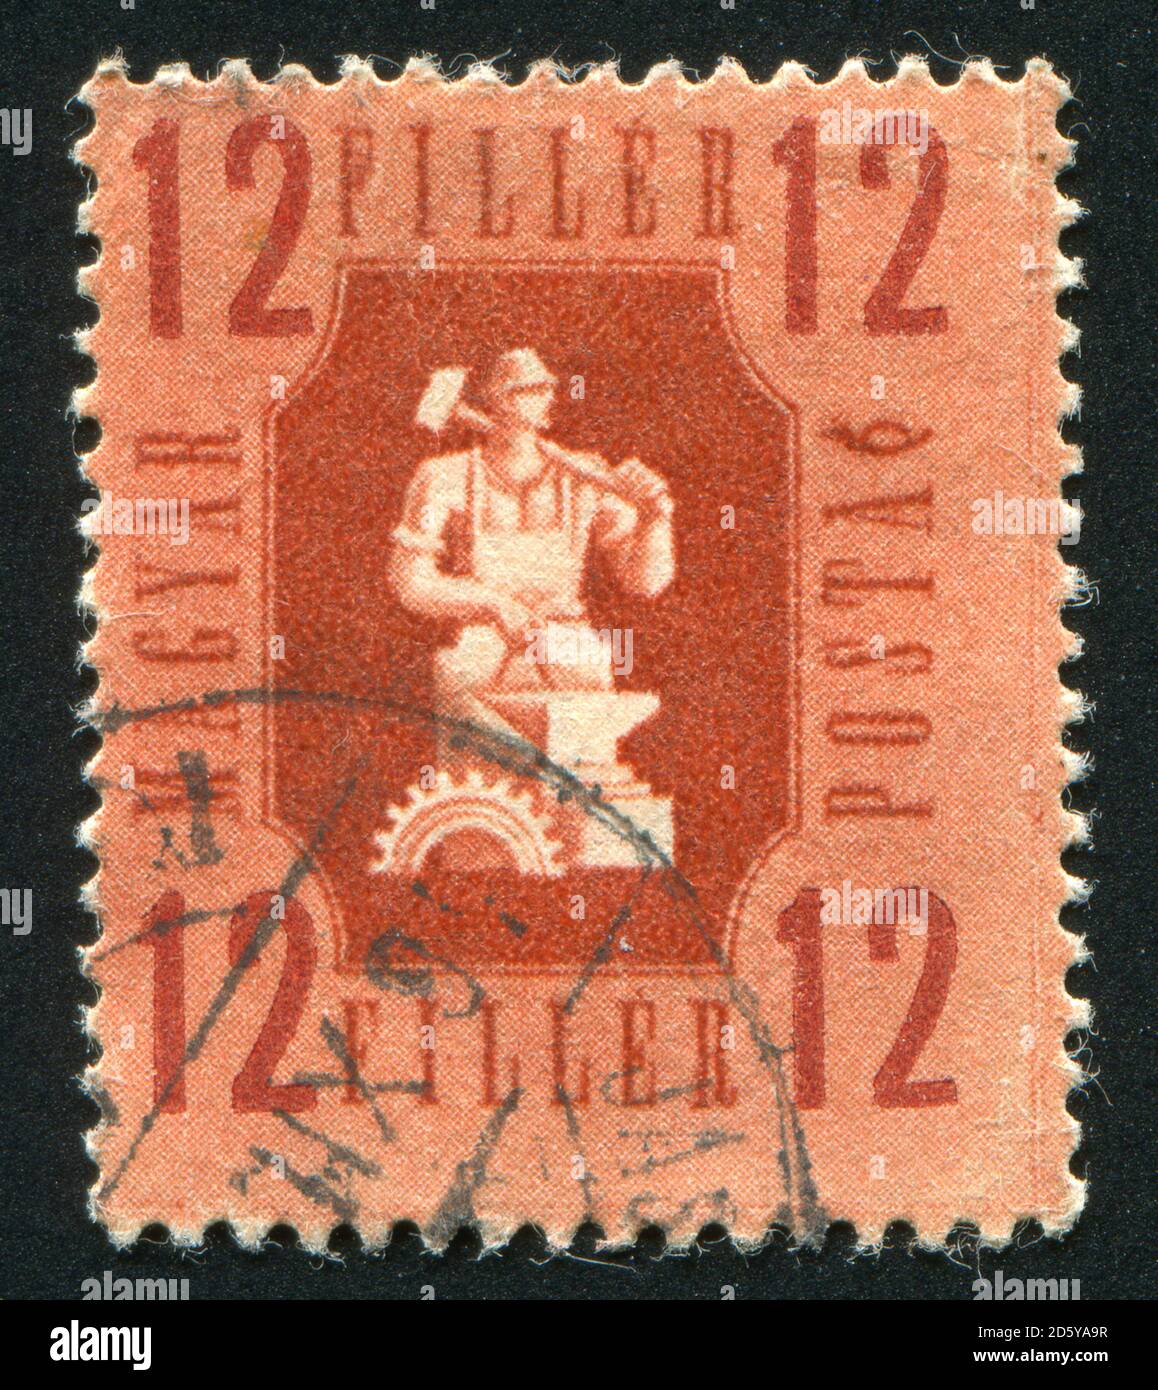 FRANKREICH - UM 1946: Briefmarke gedruckt von Frankreich, zeigt Industrie, um 1946 Stockfoto